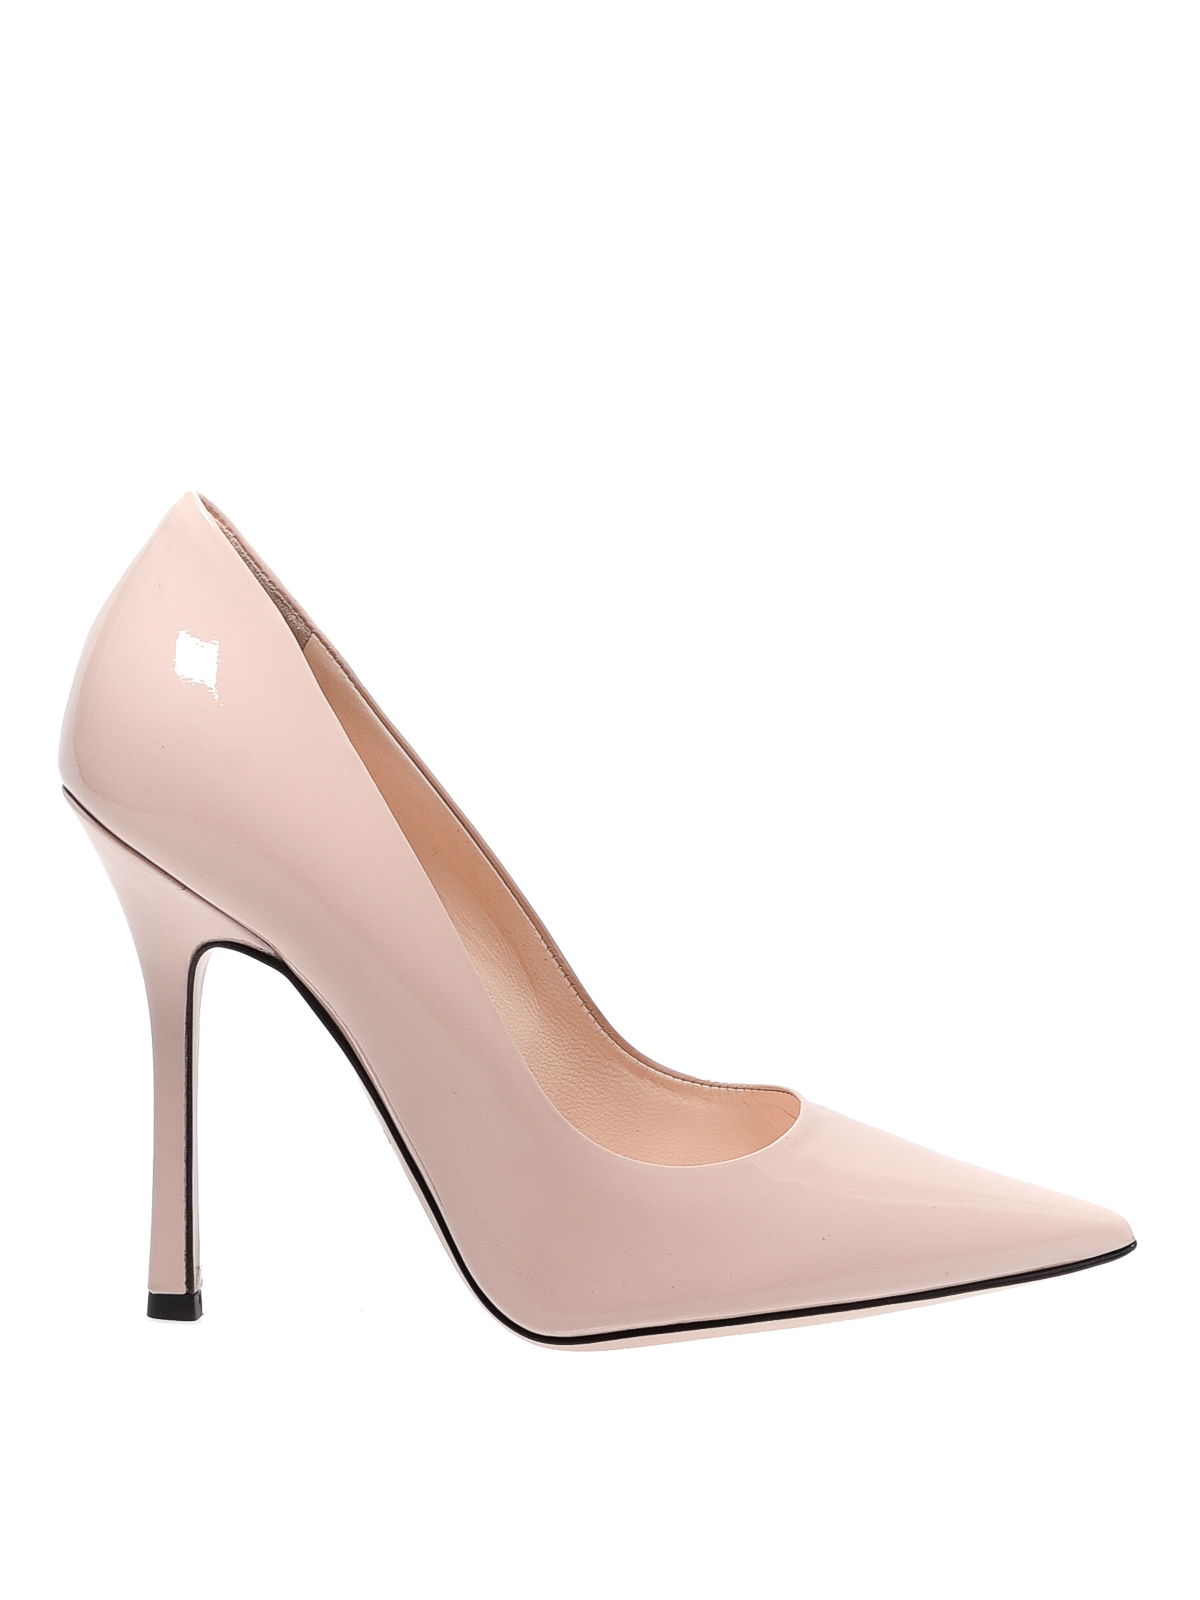 Sandales Cuir Marc Ellis en coloris Rose Femme Chaussures Chaussures à talons Sandales compensées 